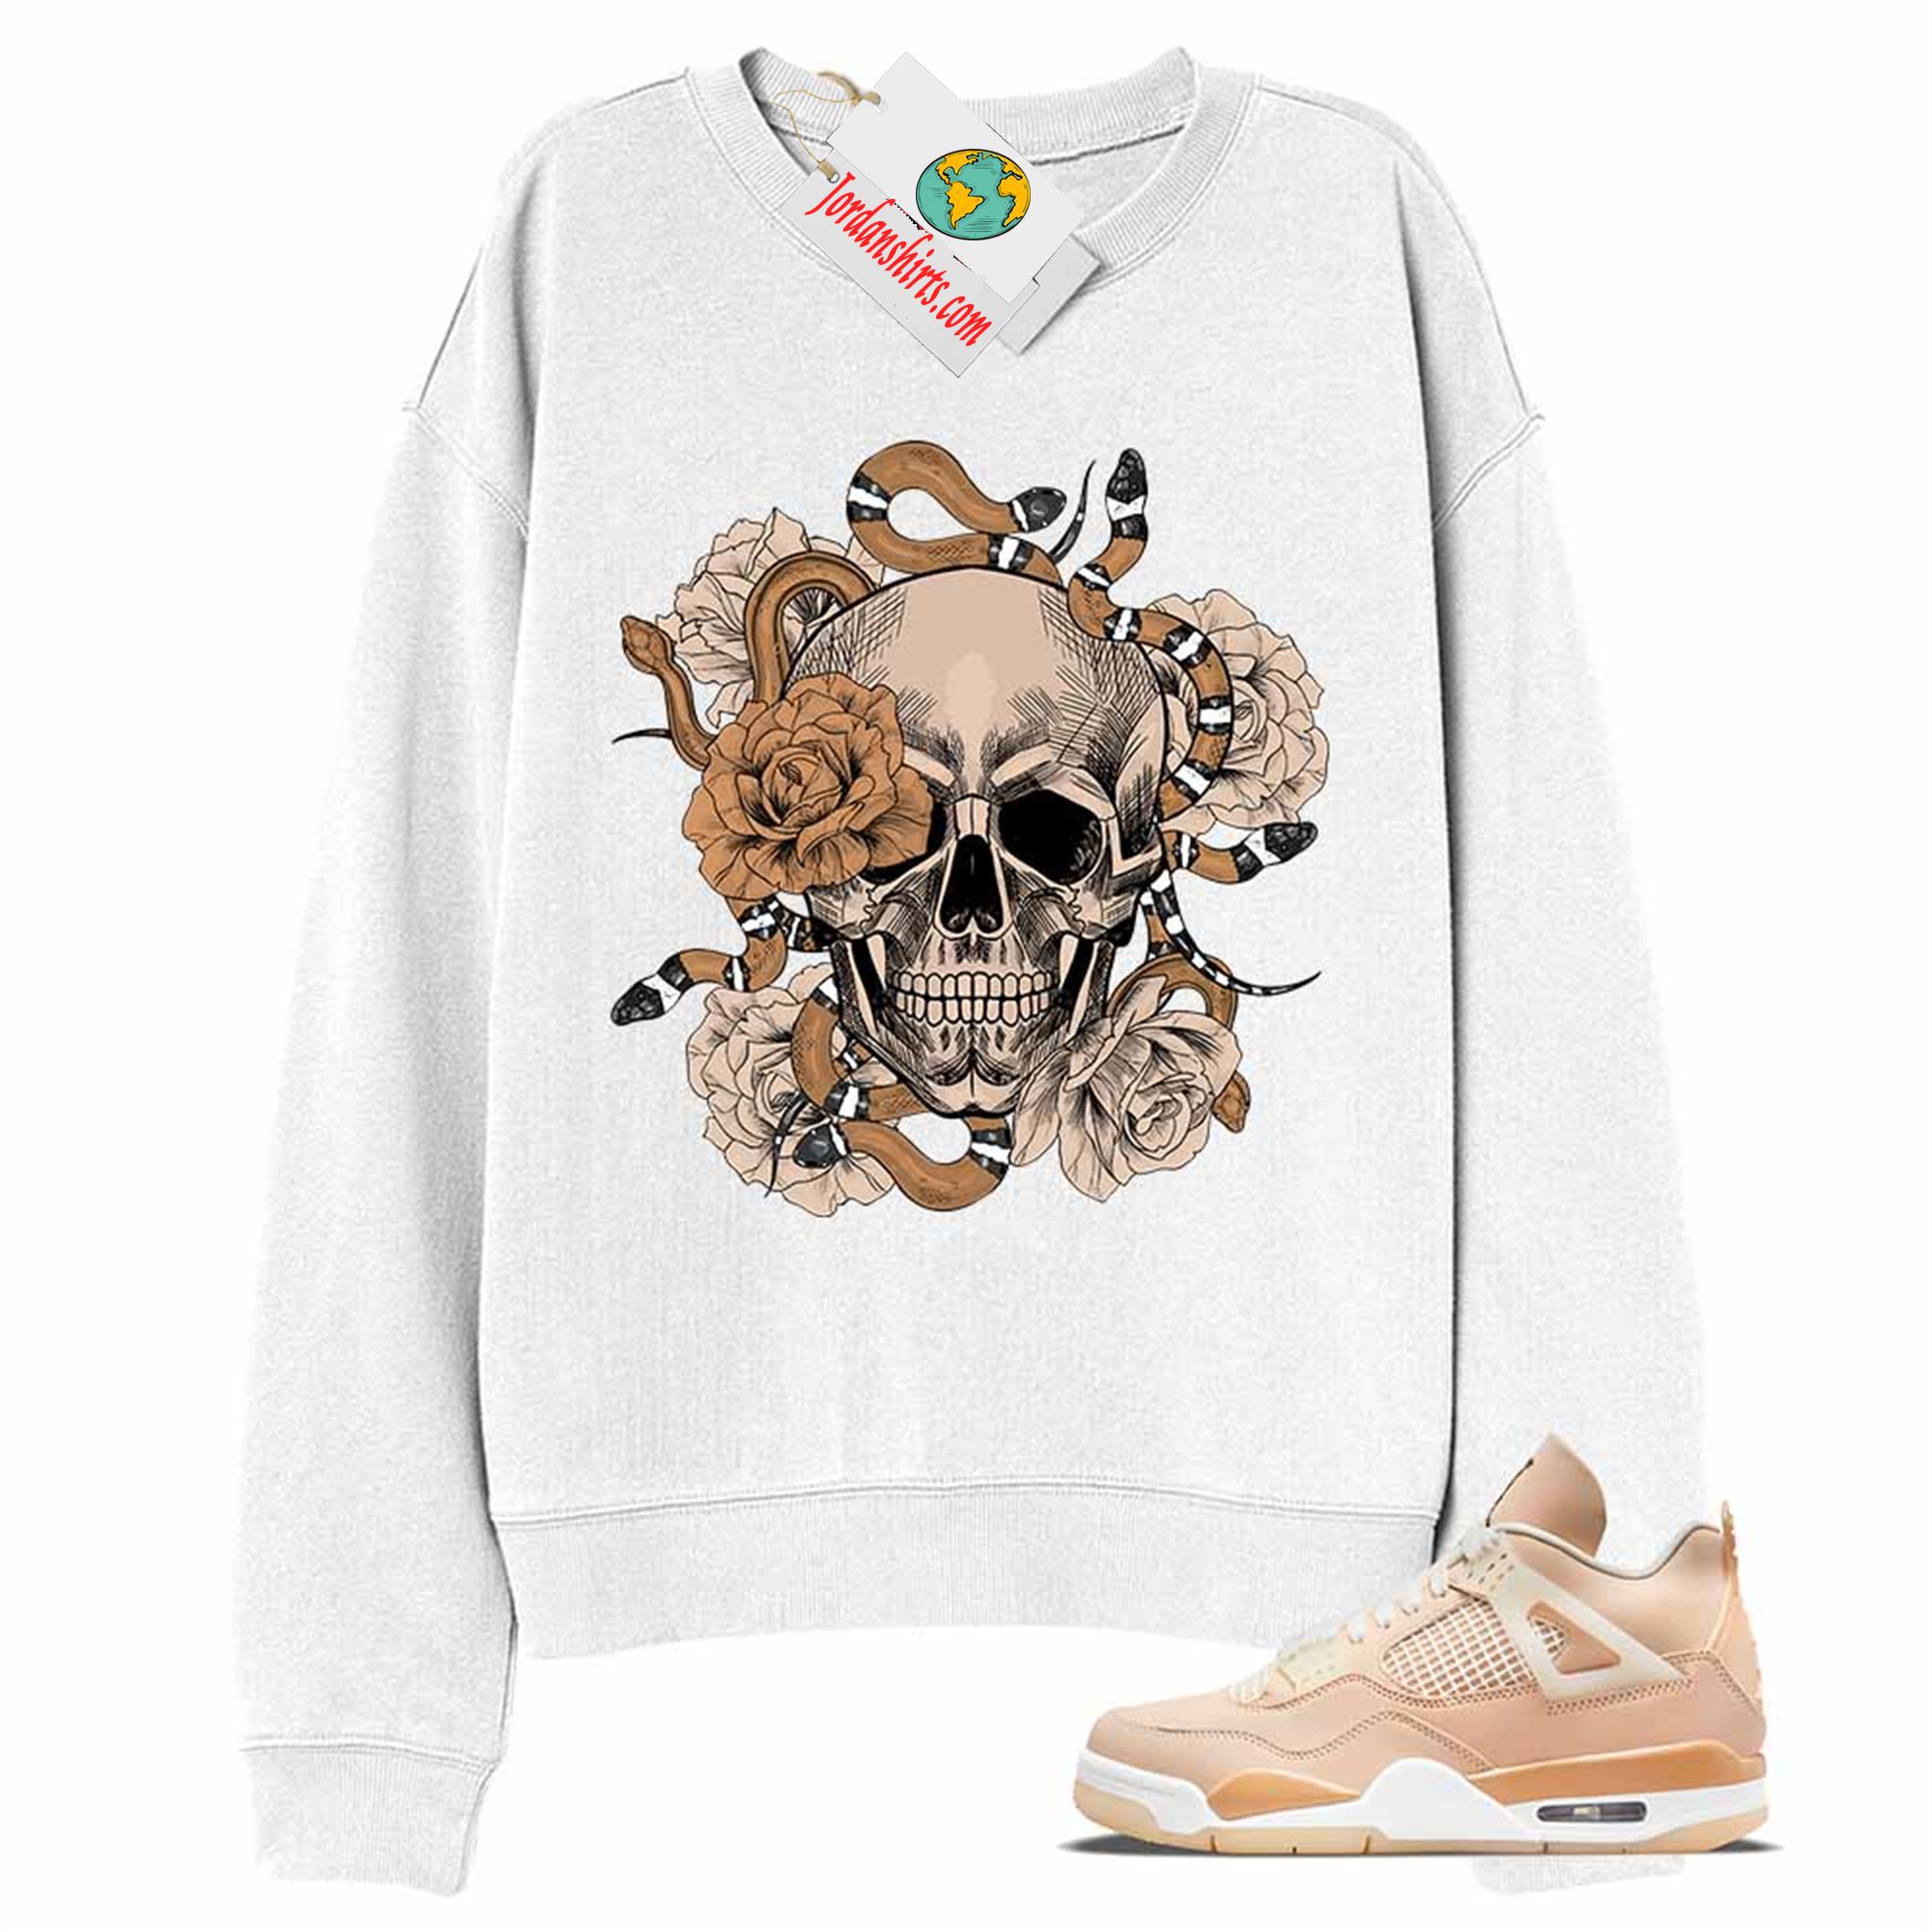 Jordan 4 Sweatshirt, Snake Skull Rose White Sweatshirt Air Jordan 4 Shimmer 4s Plus Size Up To 5xl